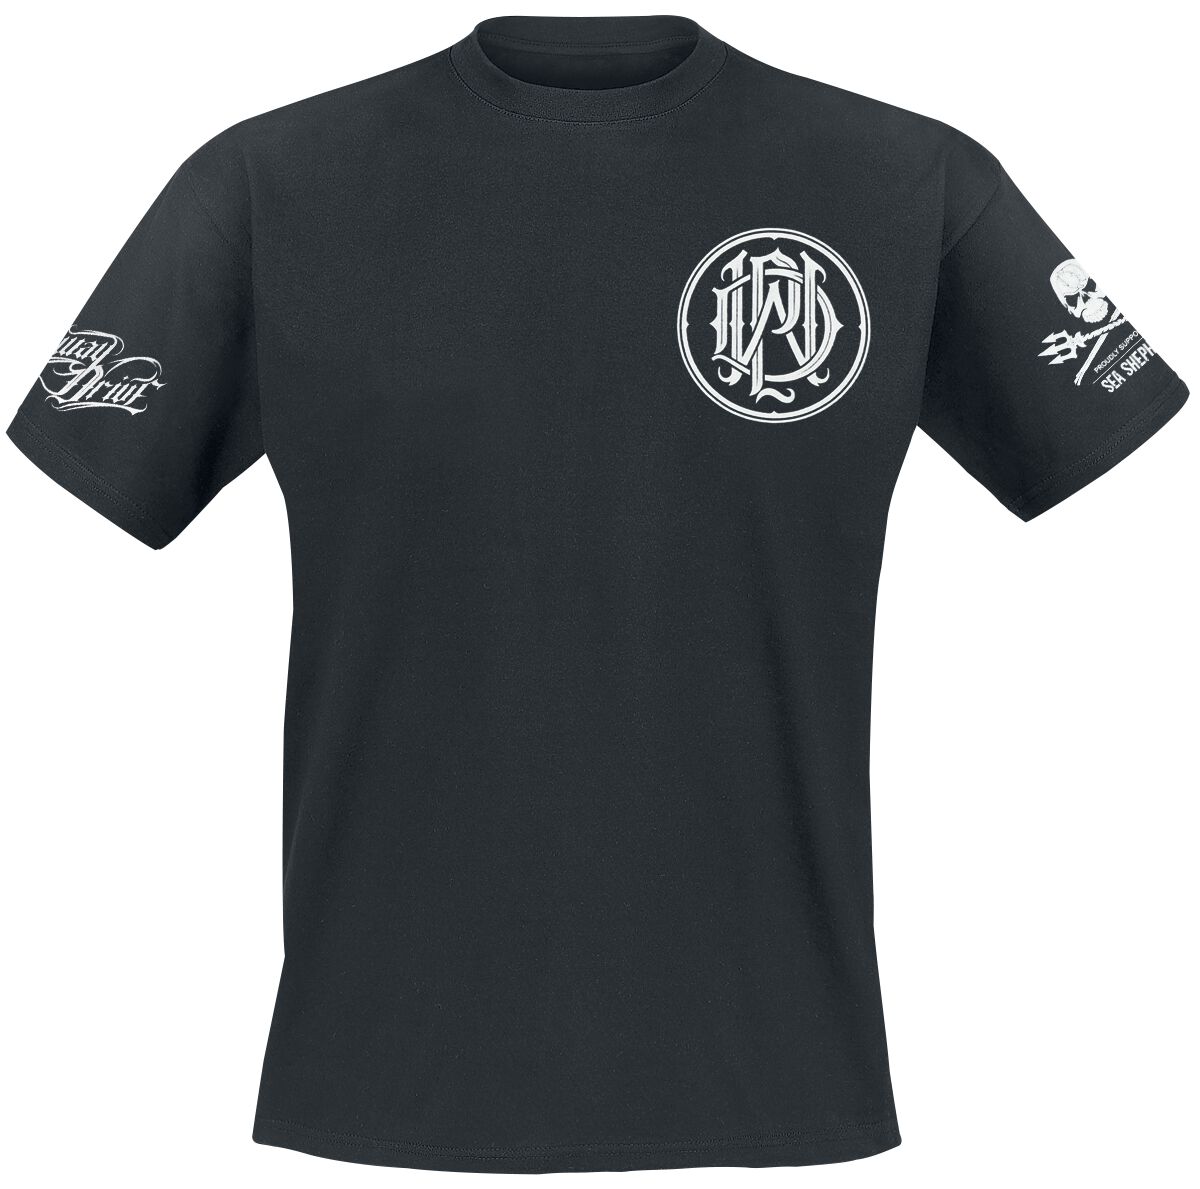 Parkway Drive T-Shirt - Sea Shepherd Cooperation - There Will Be No Future - S bis XXL - für Männer - Größe XL - schwarz  - EMP exklusives